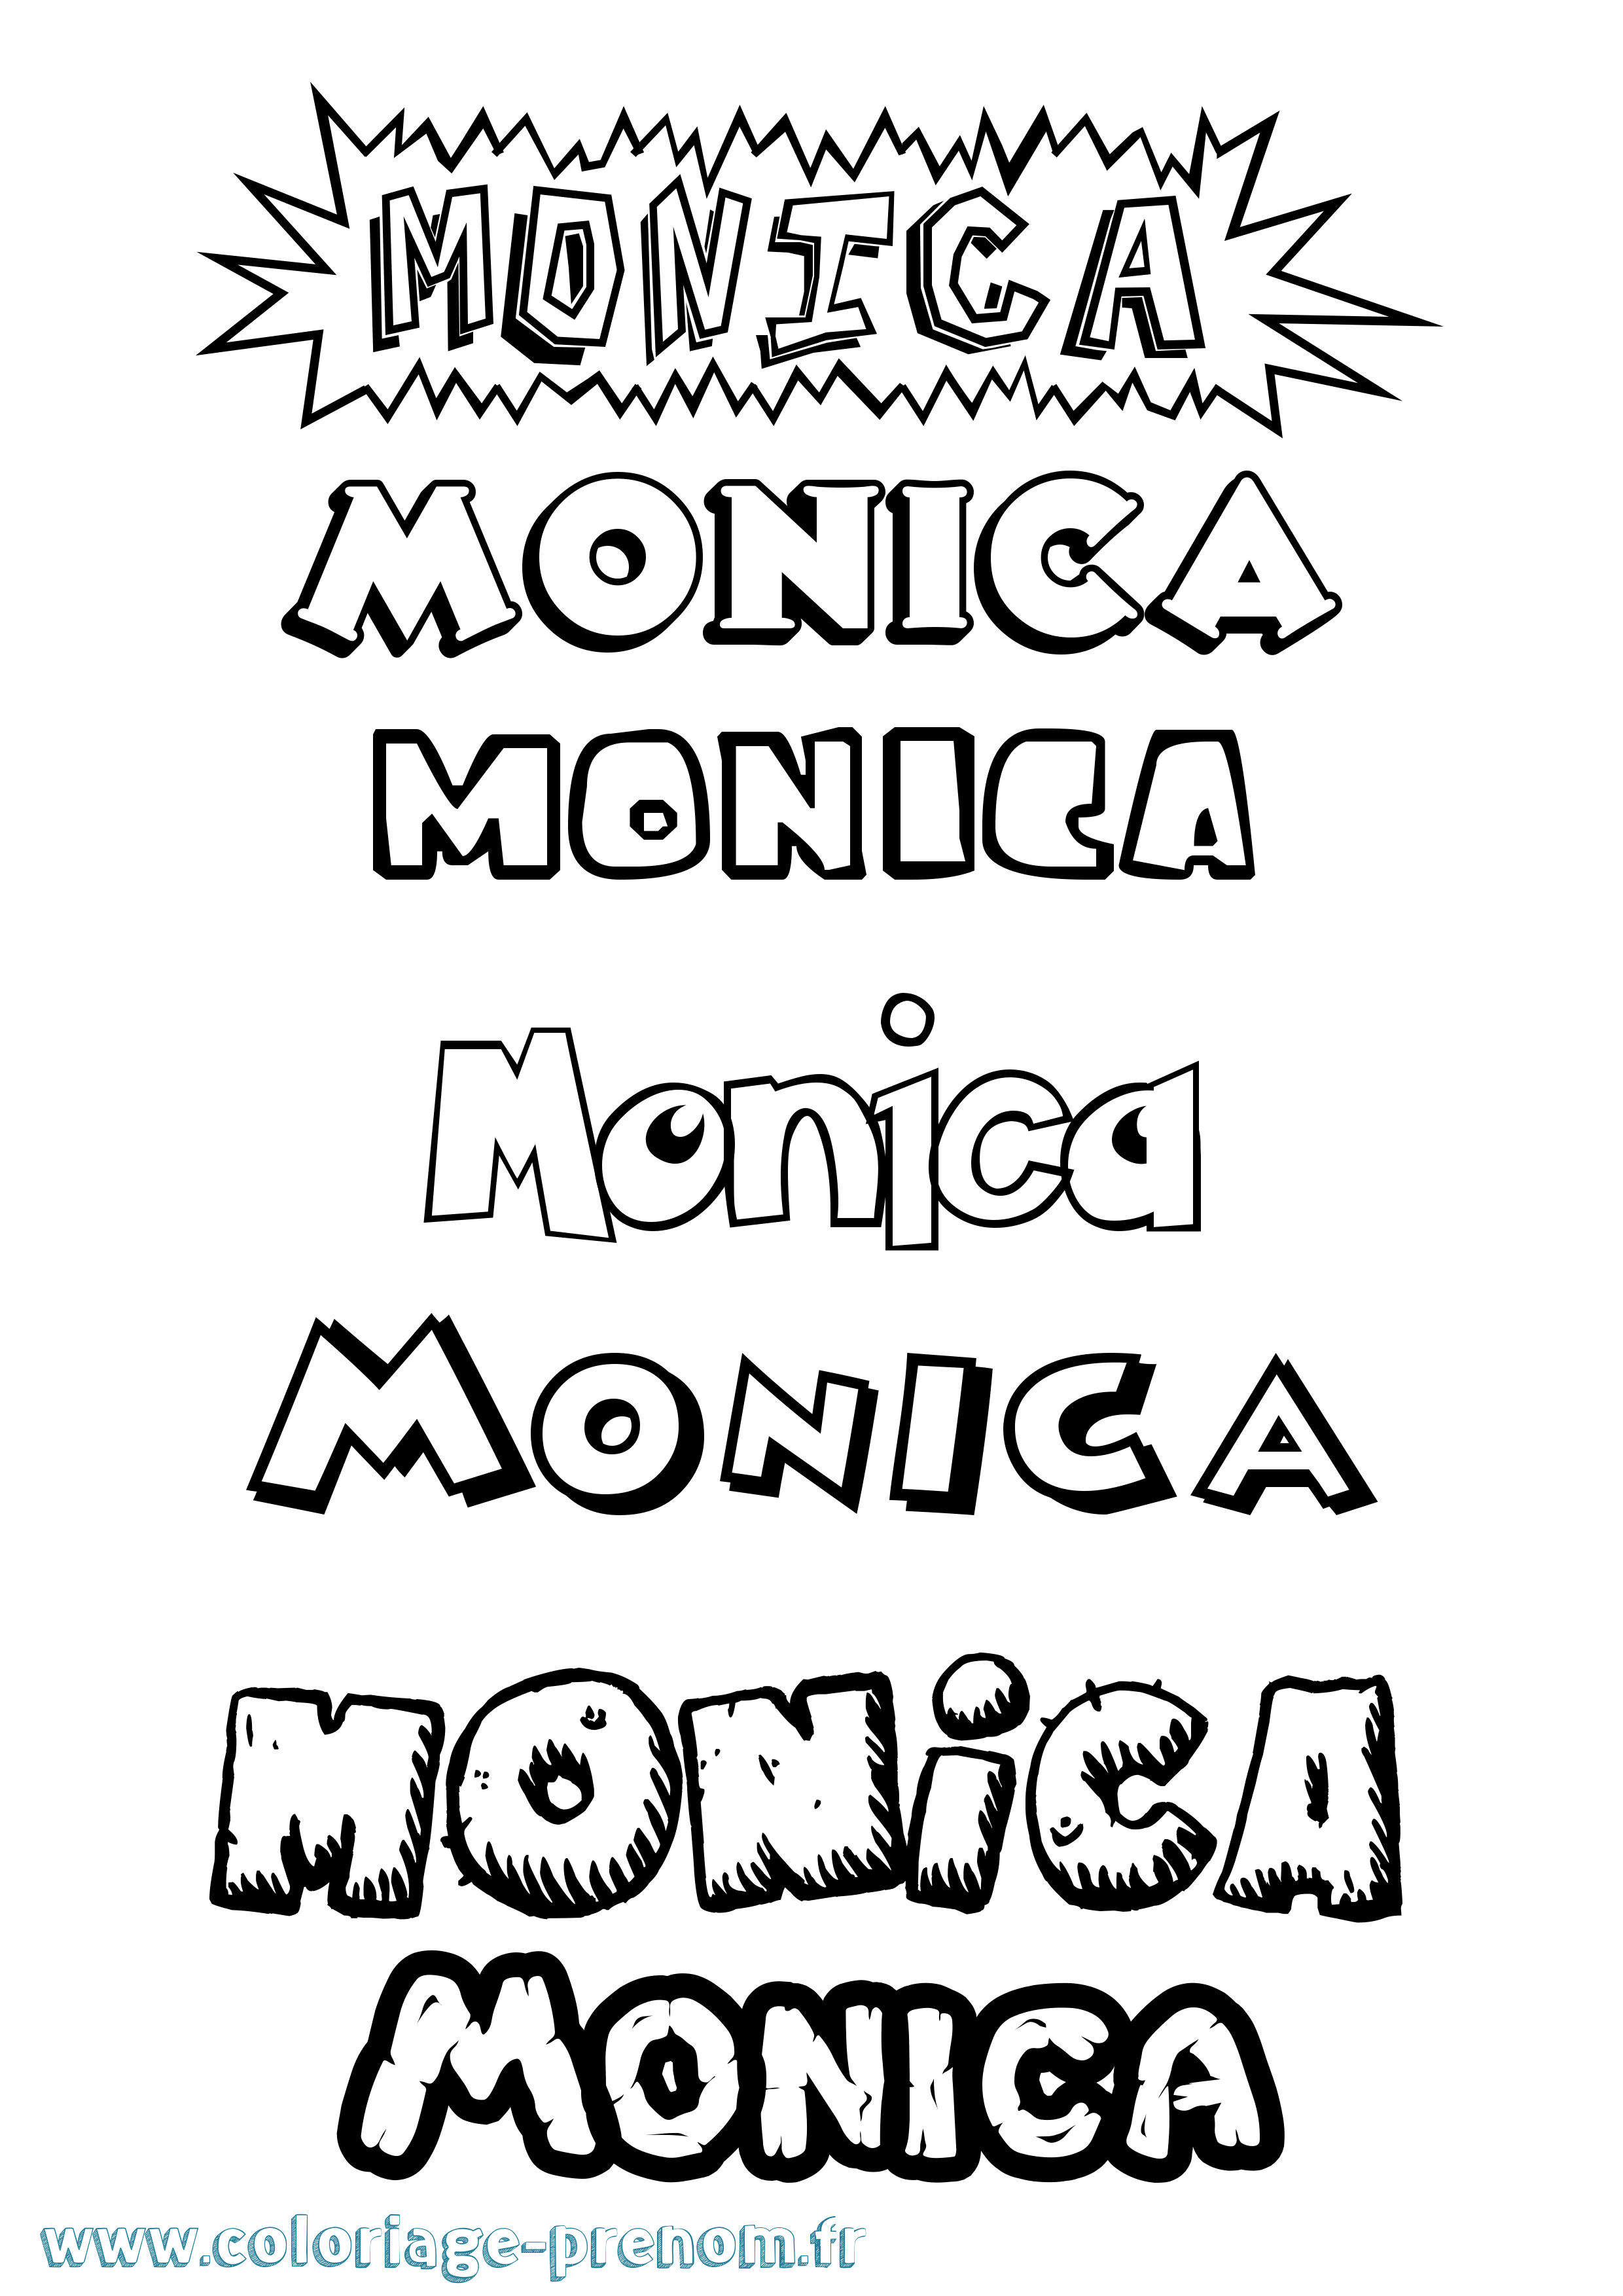 Coloriage prénom Monica